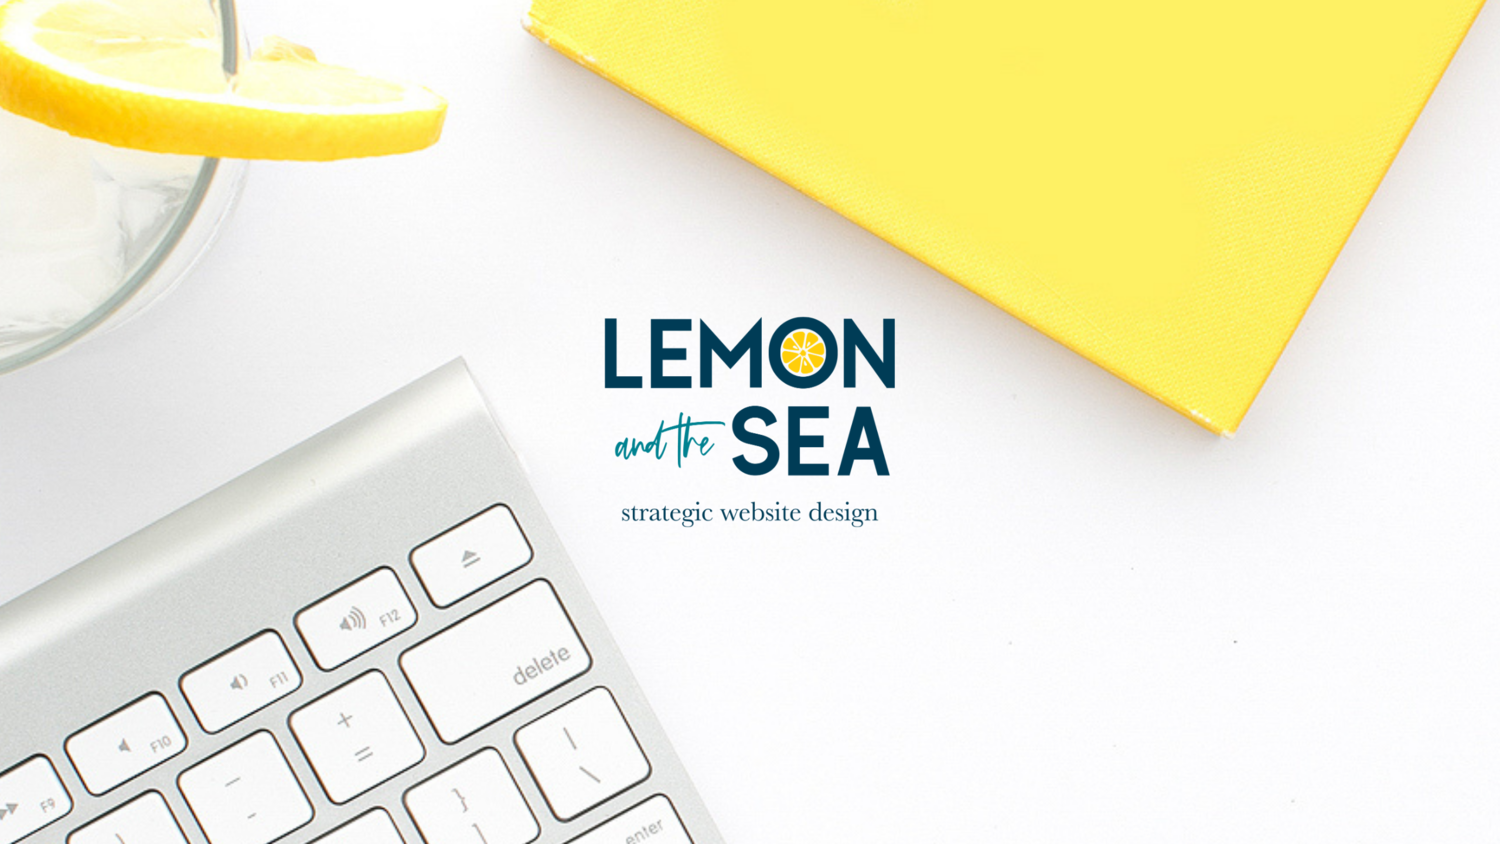 Lemon and the Sea